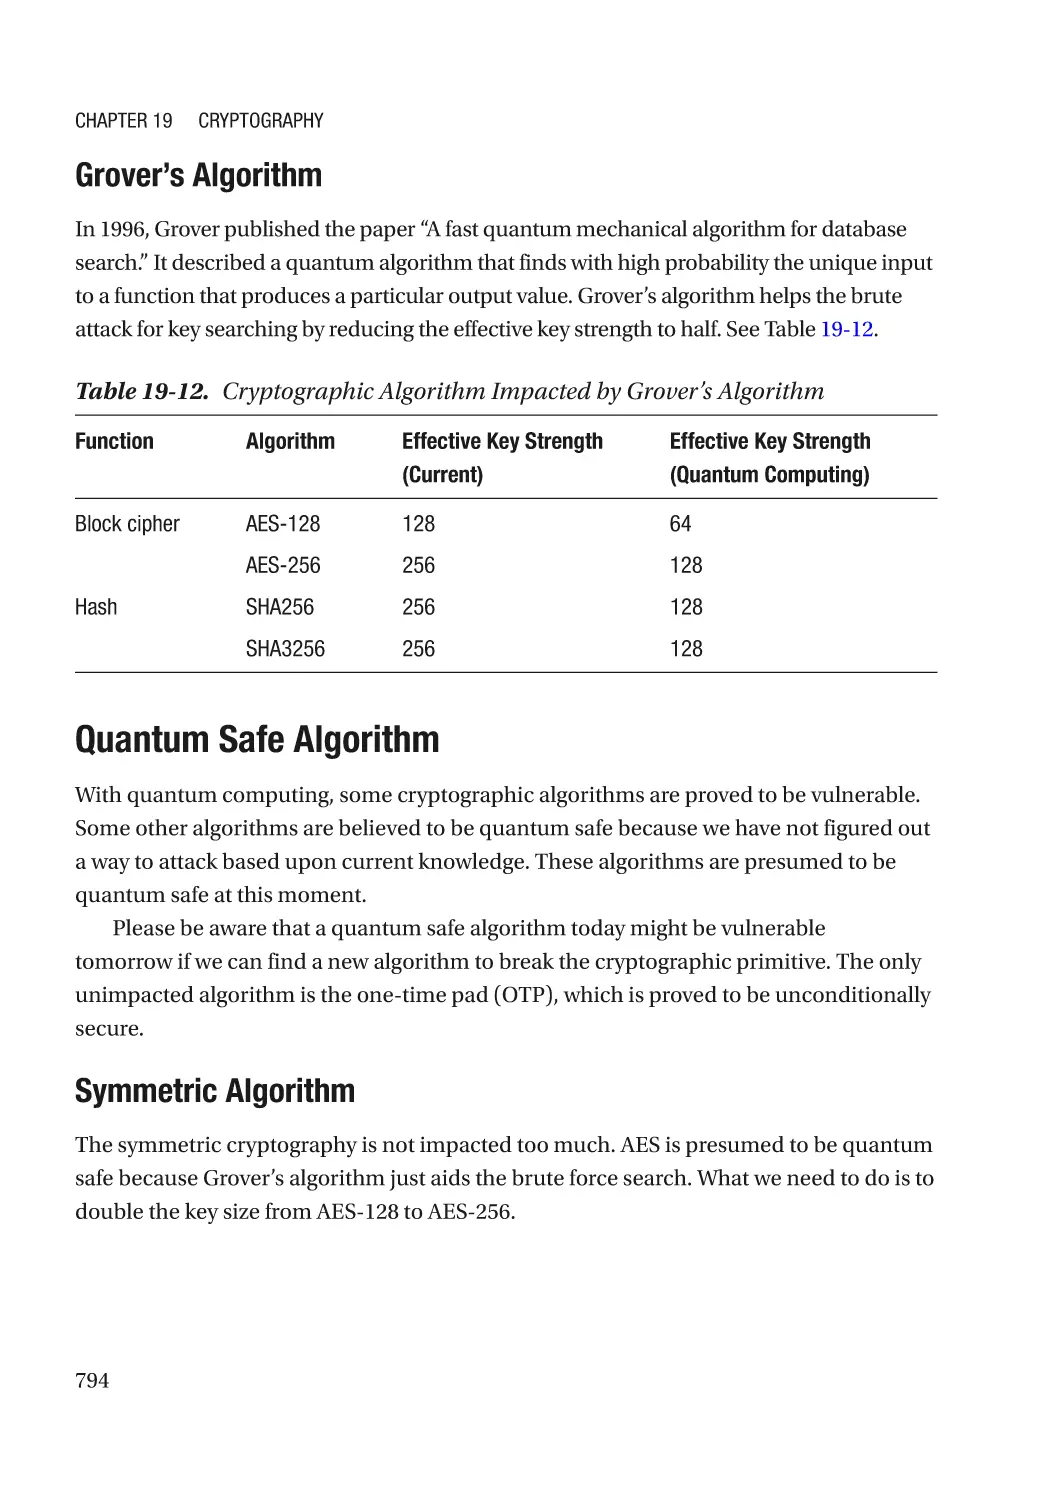 Grover’s Algorithm
Quantum Safe Algorithm
Symmetric Algorithm